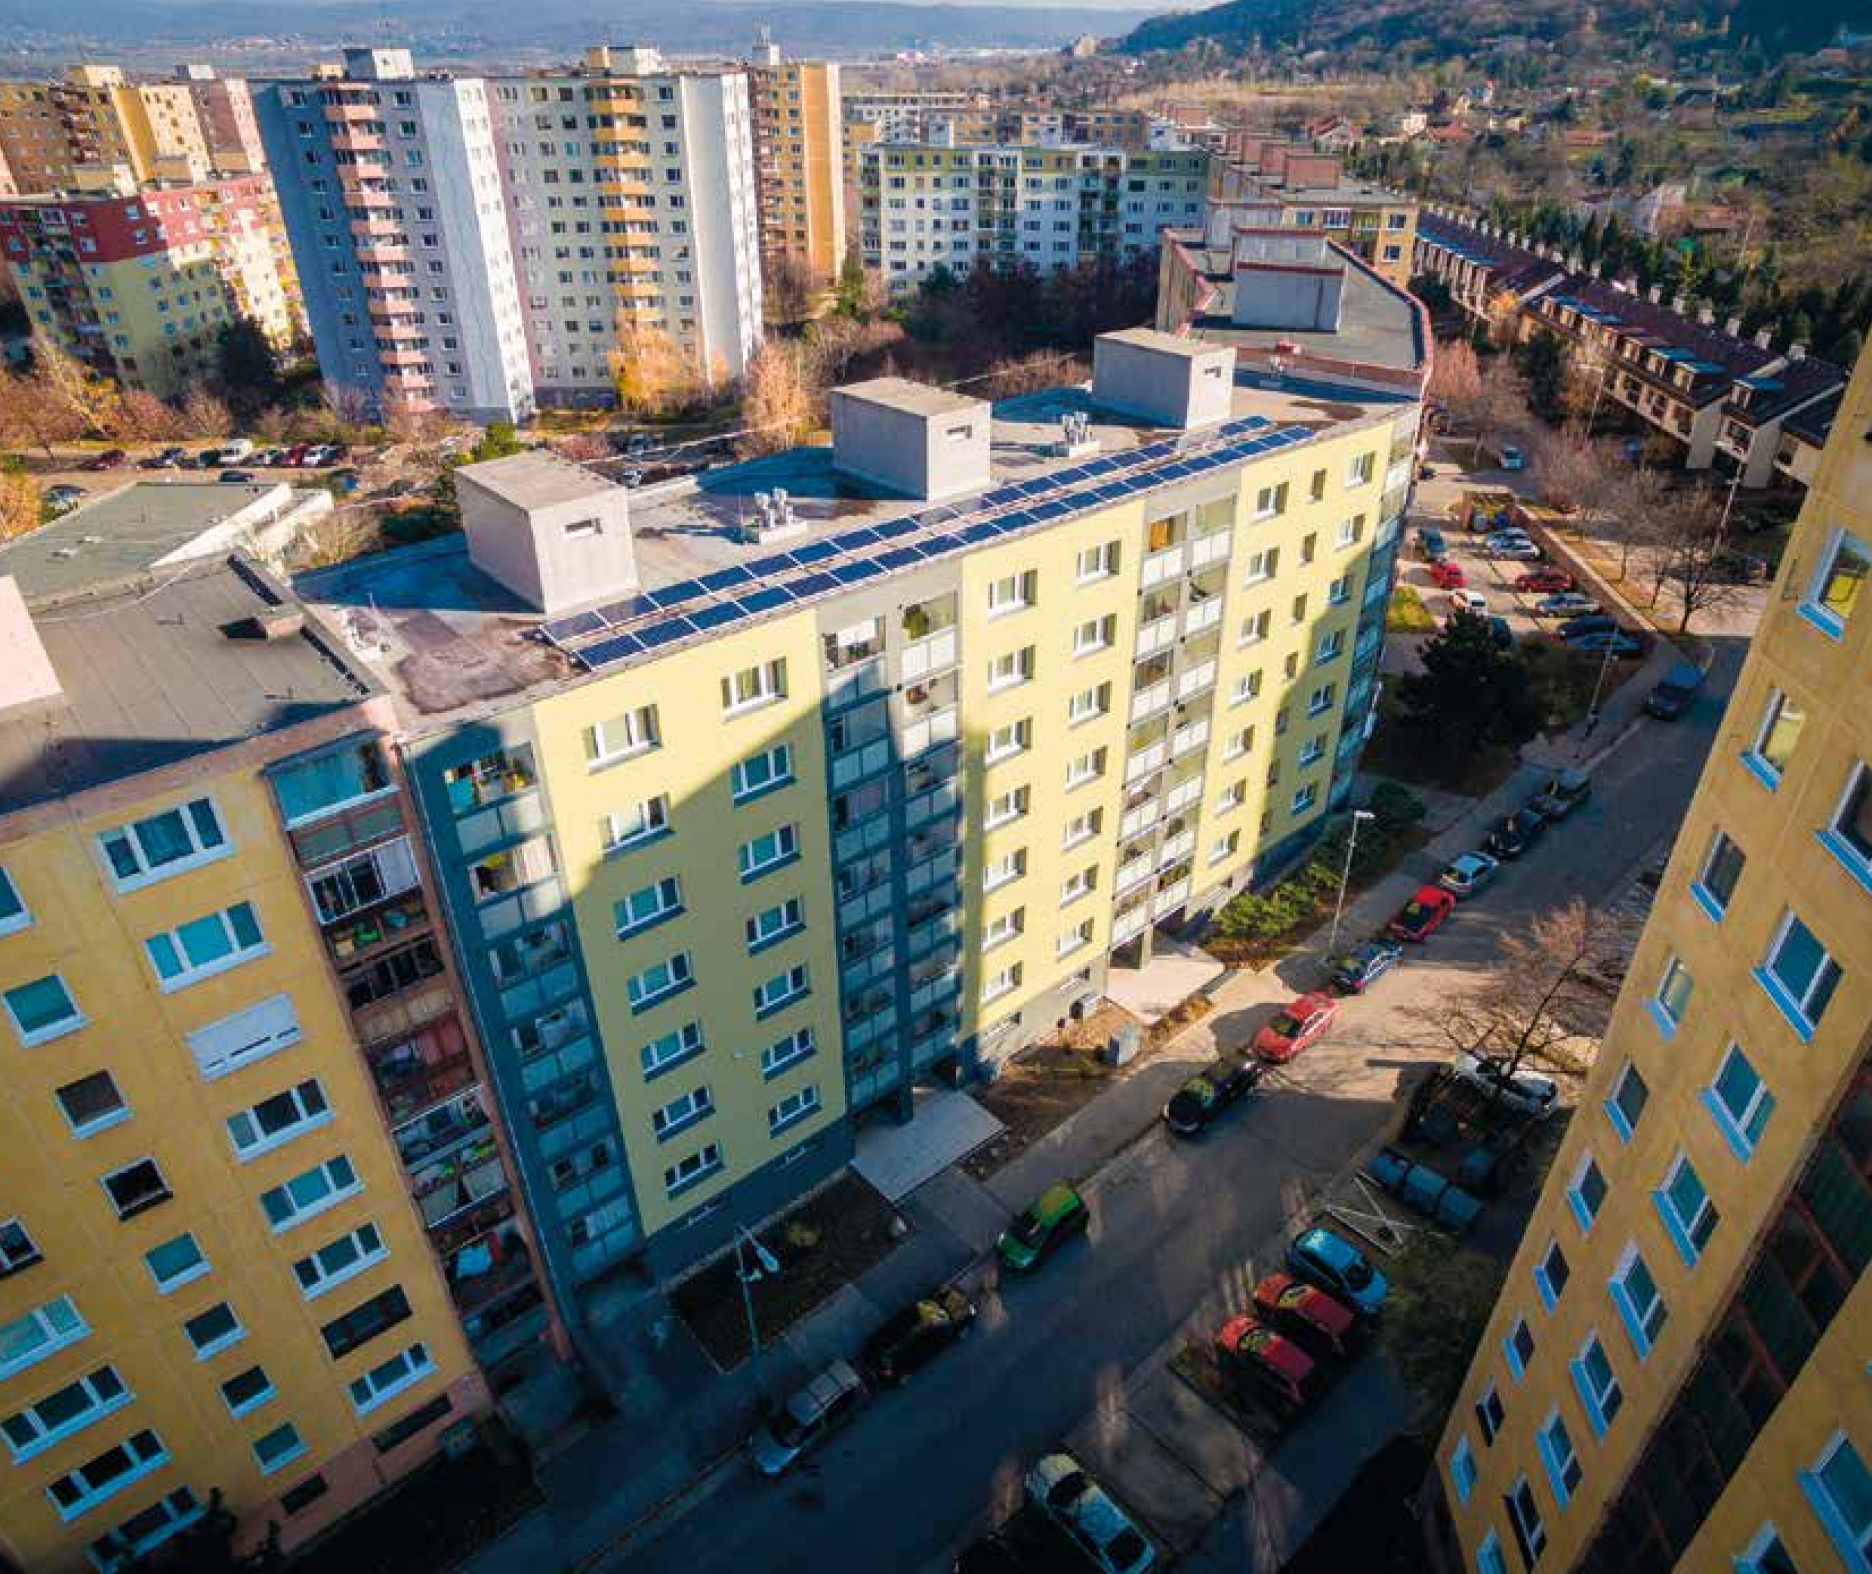 Obnova bytového domu na ulici Pavla Horova v Bratislave. Nadštandardný rozsah obnovy (zateplenie celej obálky budovy, výmena okien a rozvodov, inštalácia tepelných čerpadiel a fotovoltiky, vetranie s rekuperáciou tepla) priniesol zníženie potreby energie na vykurovanie o 74,8 % (energetická trieda A/A1),  podstatné zvýšenie kvality vnútorného prostredia a napriek nadpriemerným investičným nákladom  (920 tis. eur/42 bytov) okamžité zníženie mesačných zálohových platieb o 13 €/byt. Projekt bol vyhlásený  za Najlepšie obnovený bytový dom 2015.